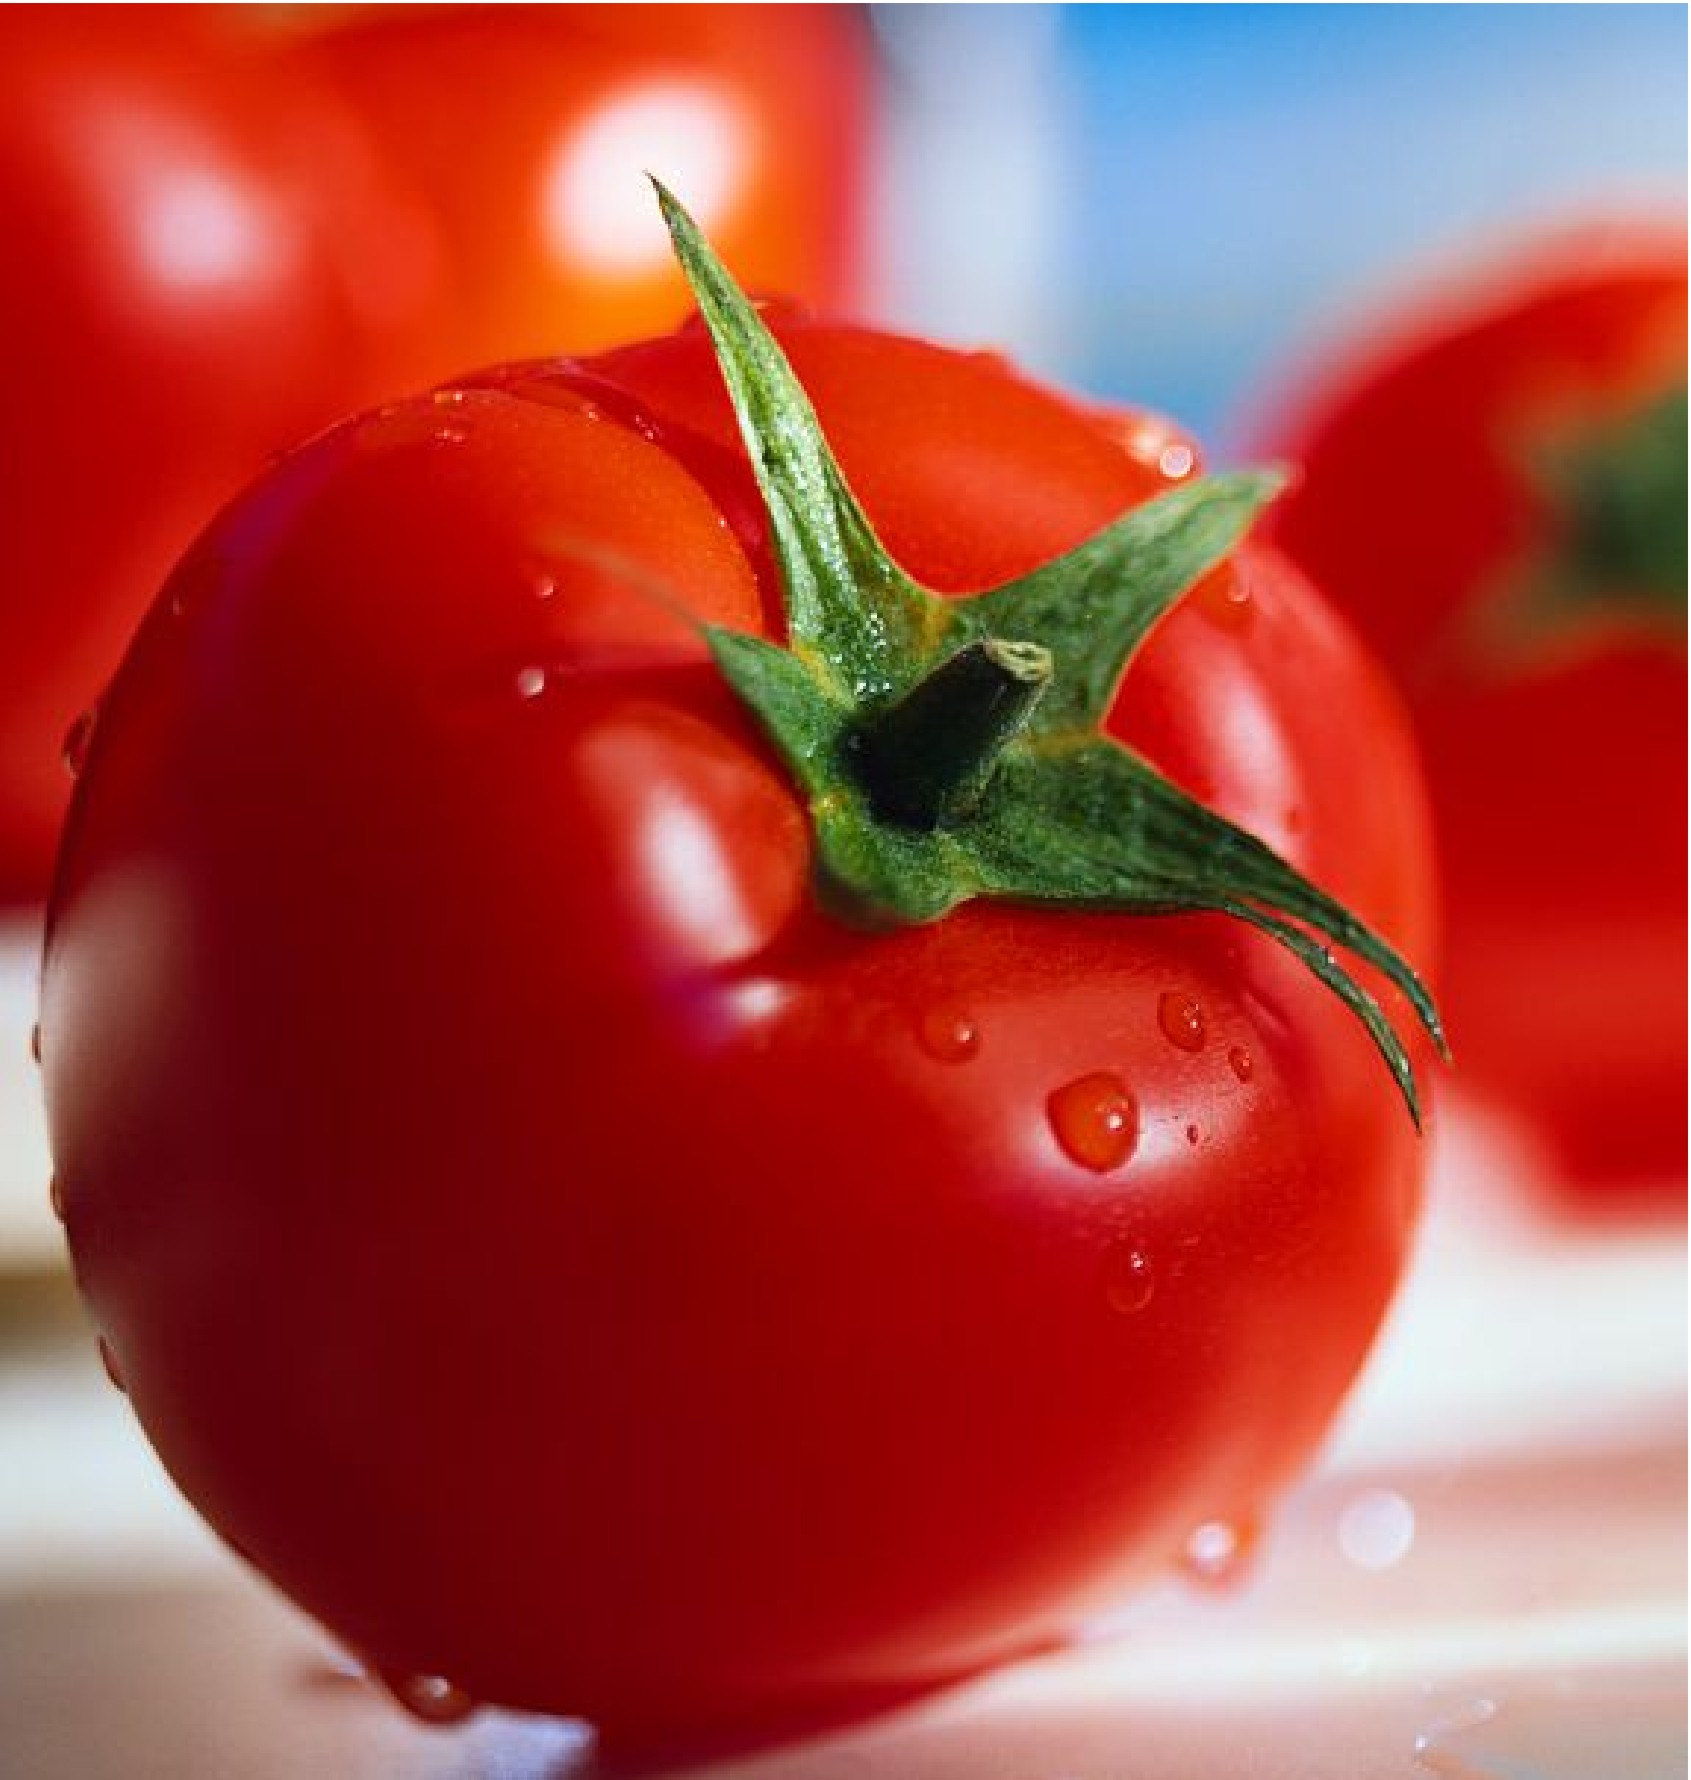 Голландские сорта томатов - особенности, преимущества и правилавыращивания, уход и сбор урожая